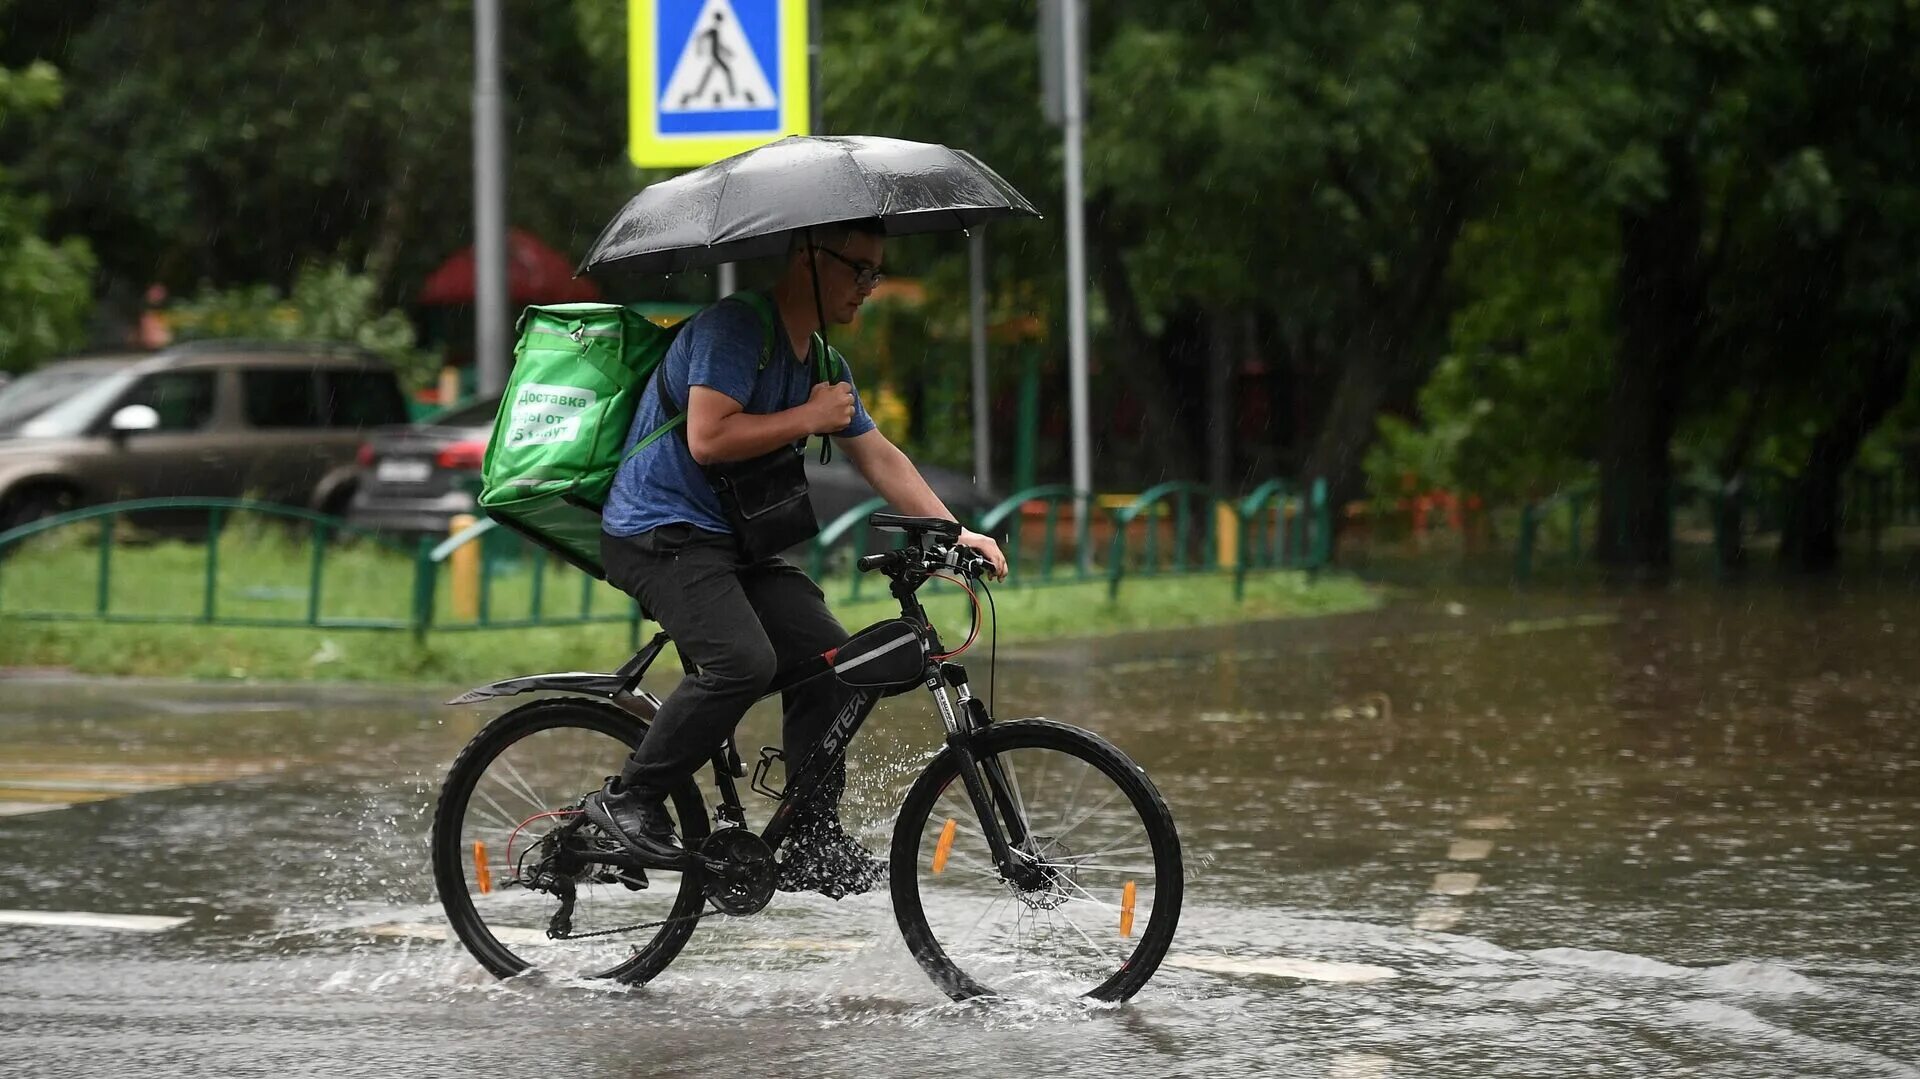 Велосипед дождь. Курьер на велосипеде в дождь. Велосипедист под дождем. Велосипед ливень. Дождь без перерыва